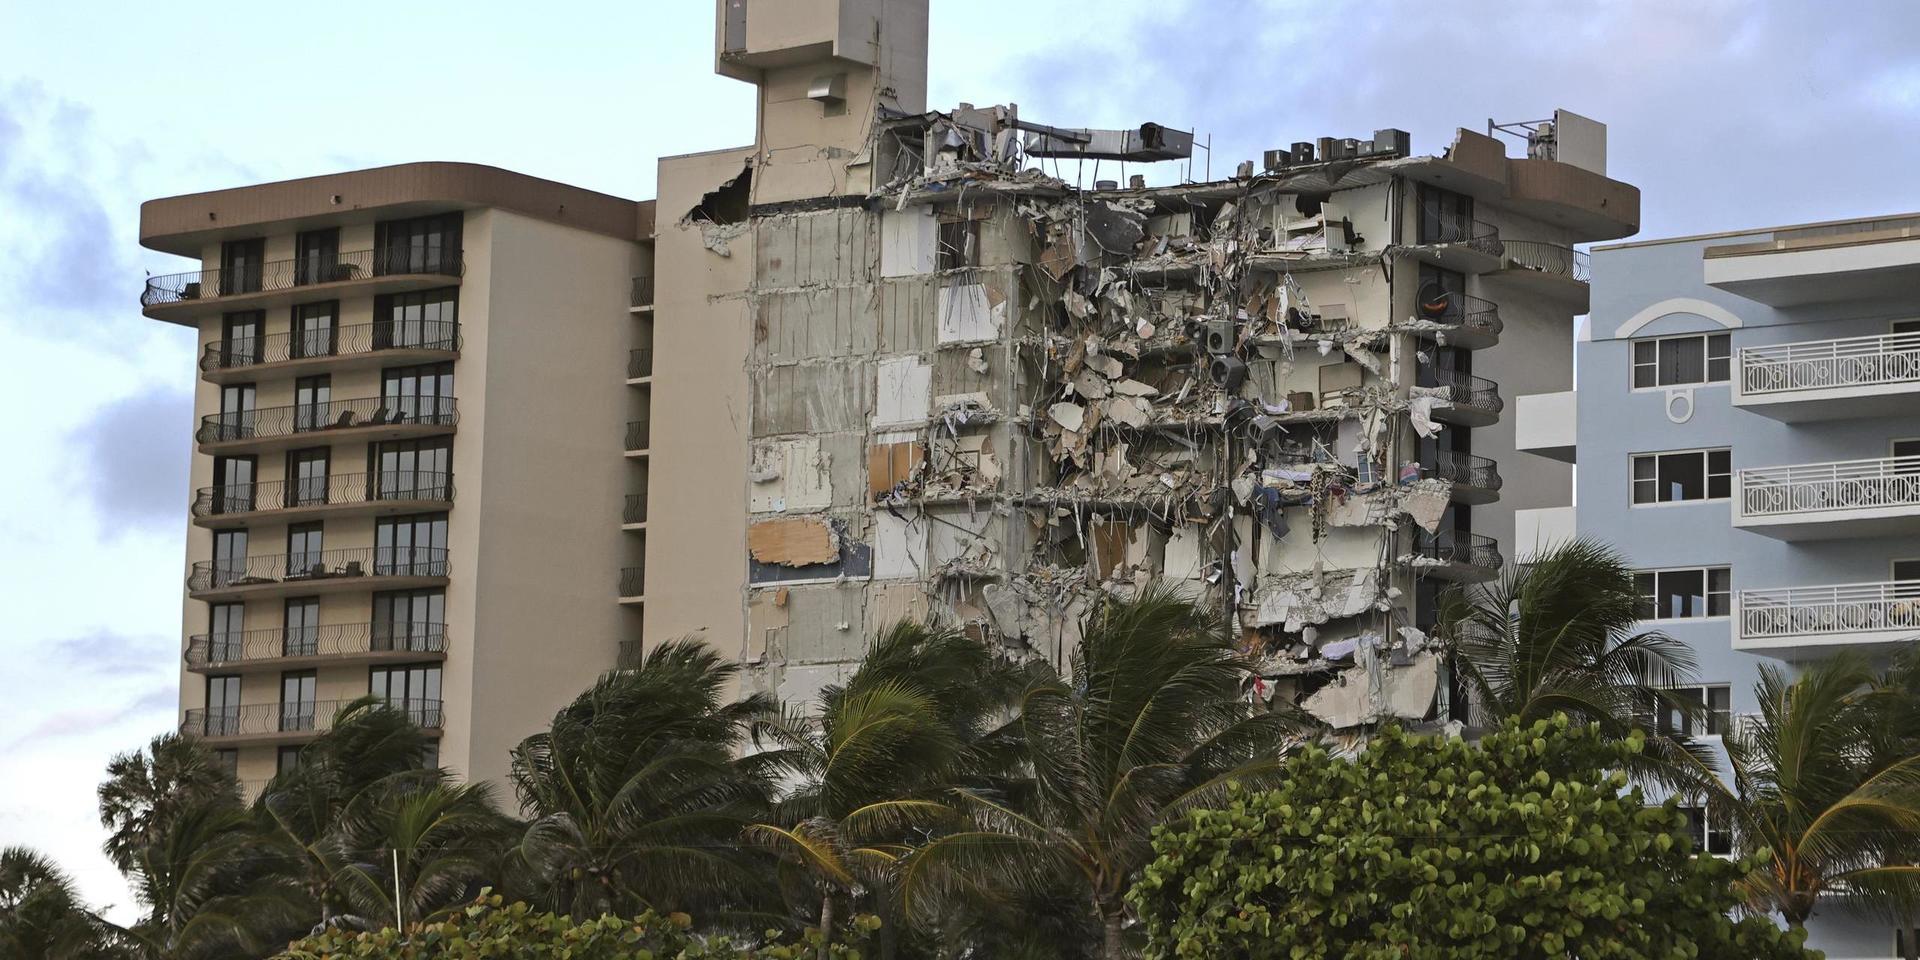 Ett bostadshus kollapsade i Miami under torsdagsmorgonen. Nästan 100 människor saknas efter raset. En person har bekräftats död.